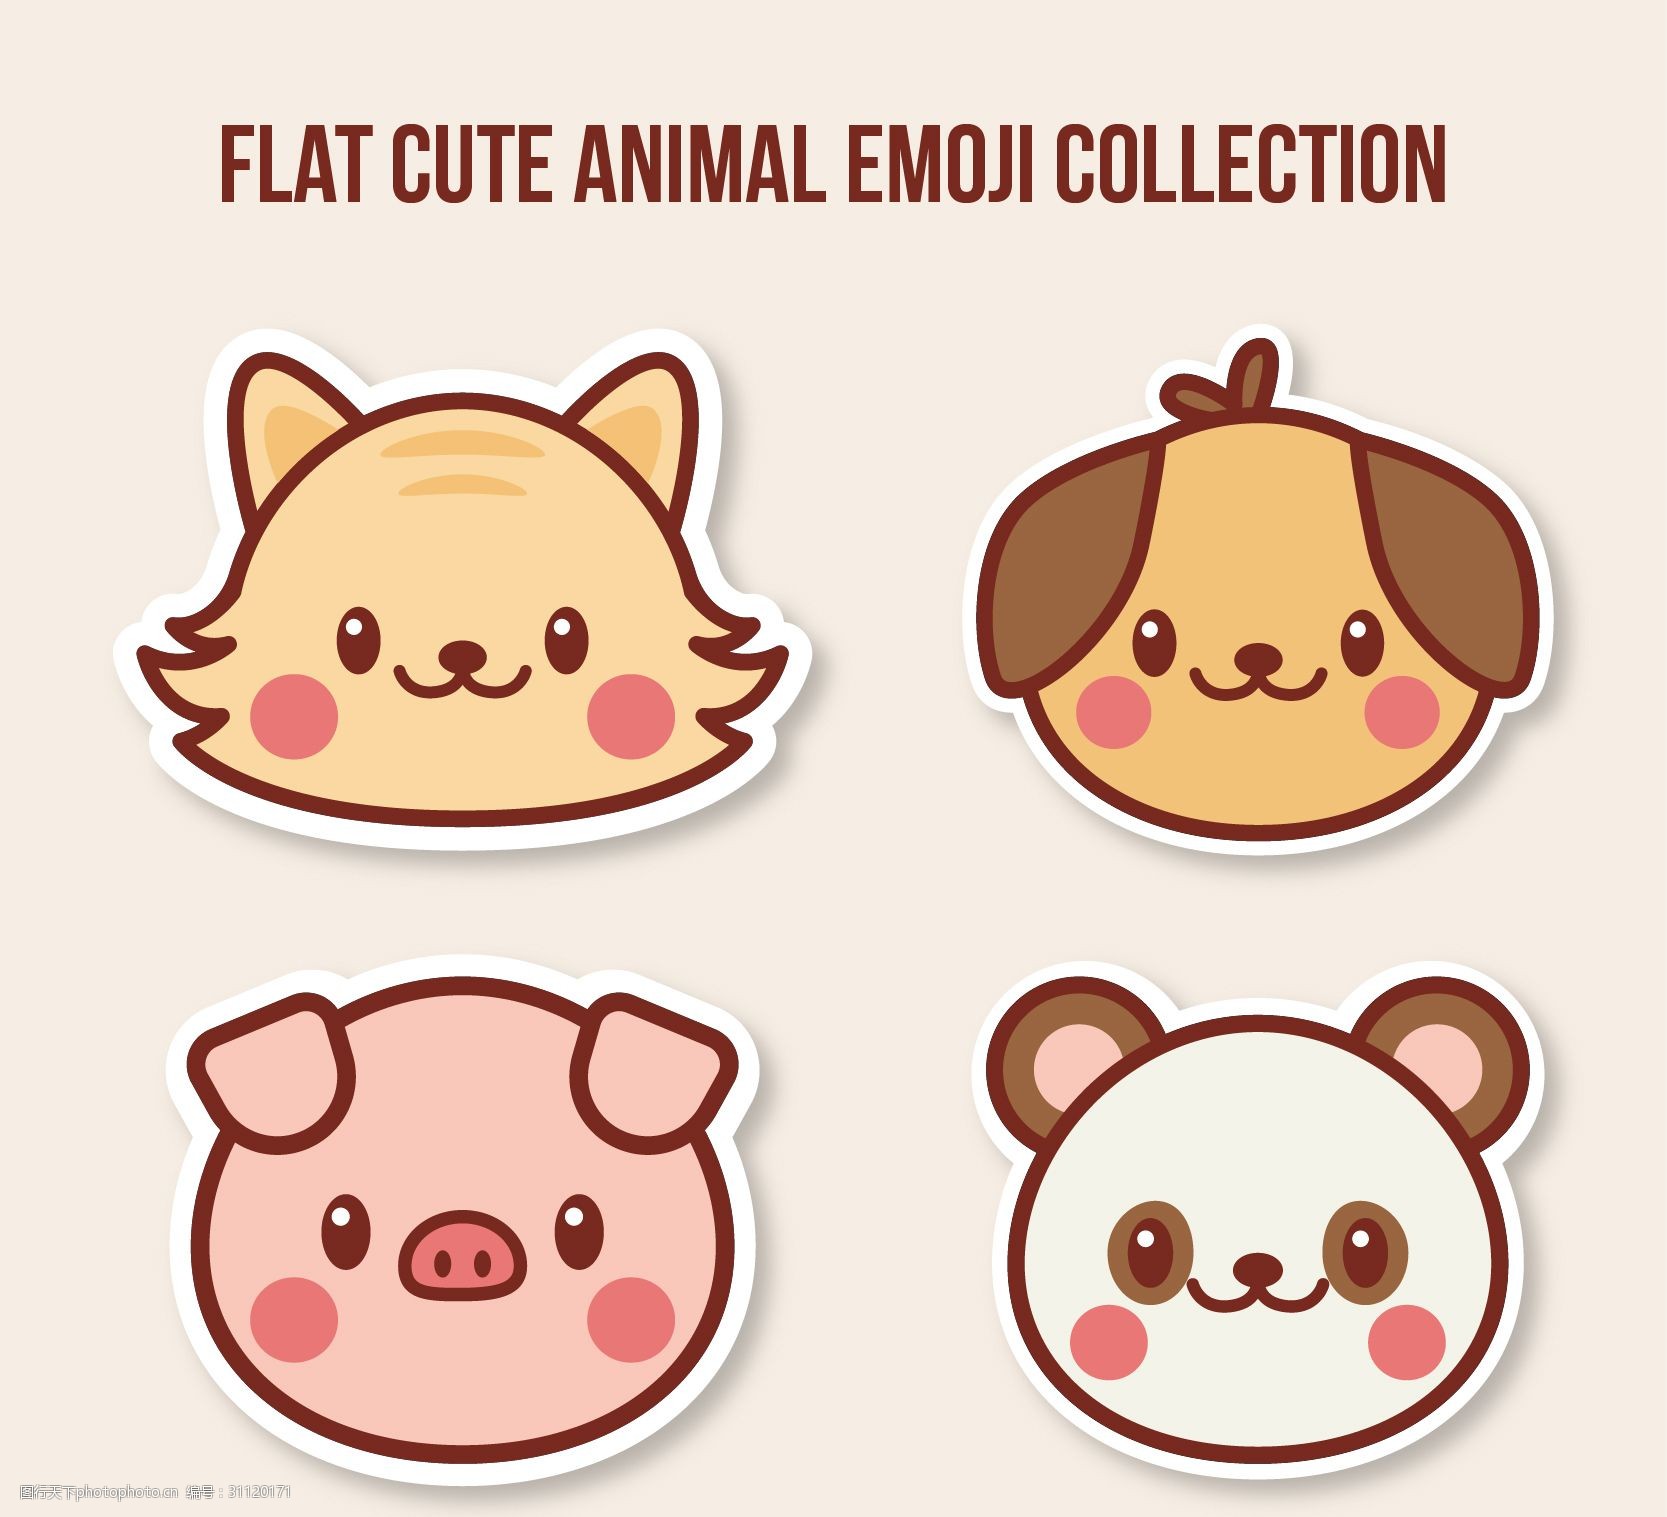 关键词:卡通的动物表情符号 表情 卡通表情 猪 猪头 熊猫 动物表情